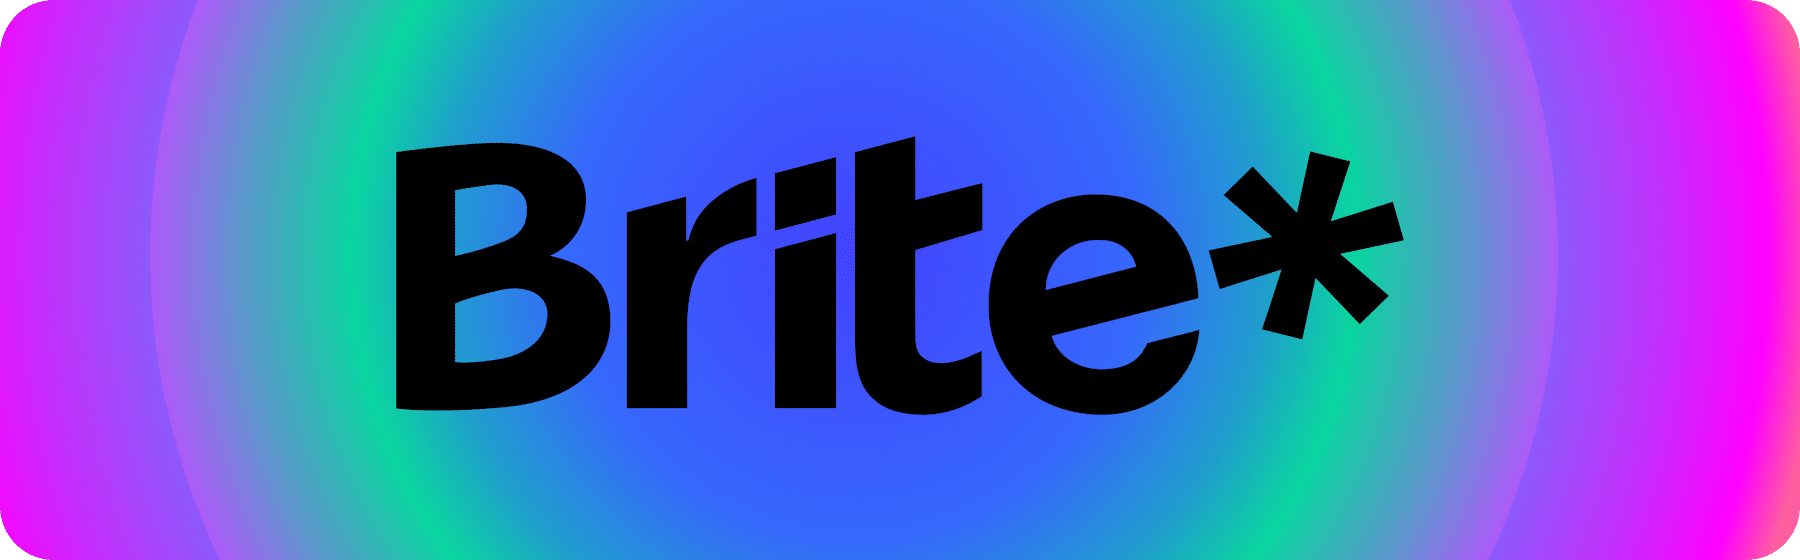 Brite logo voor betaling op blauwe achtergrond